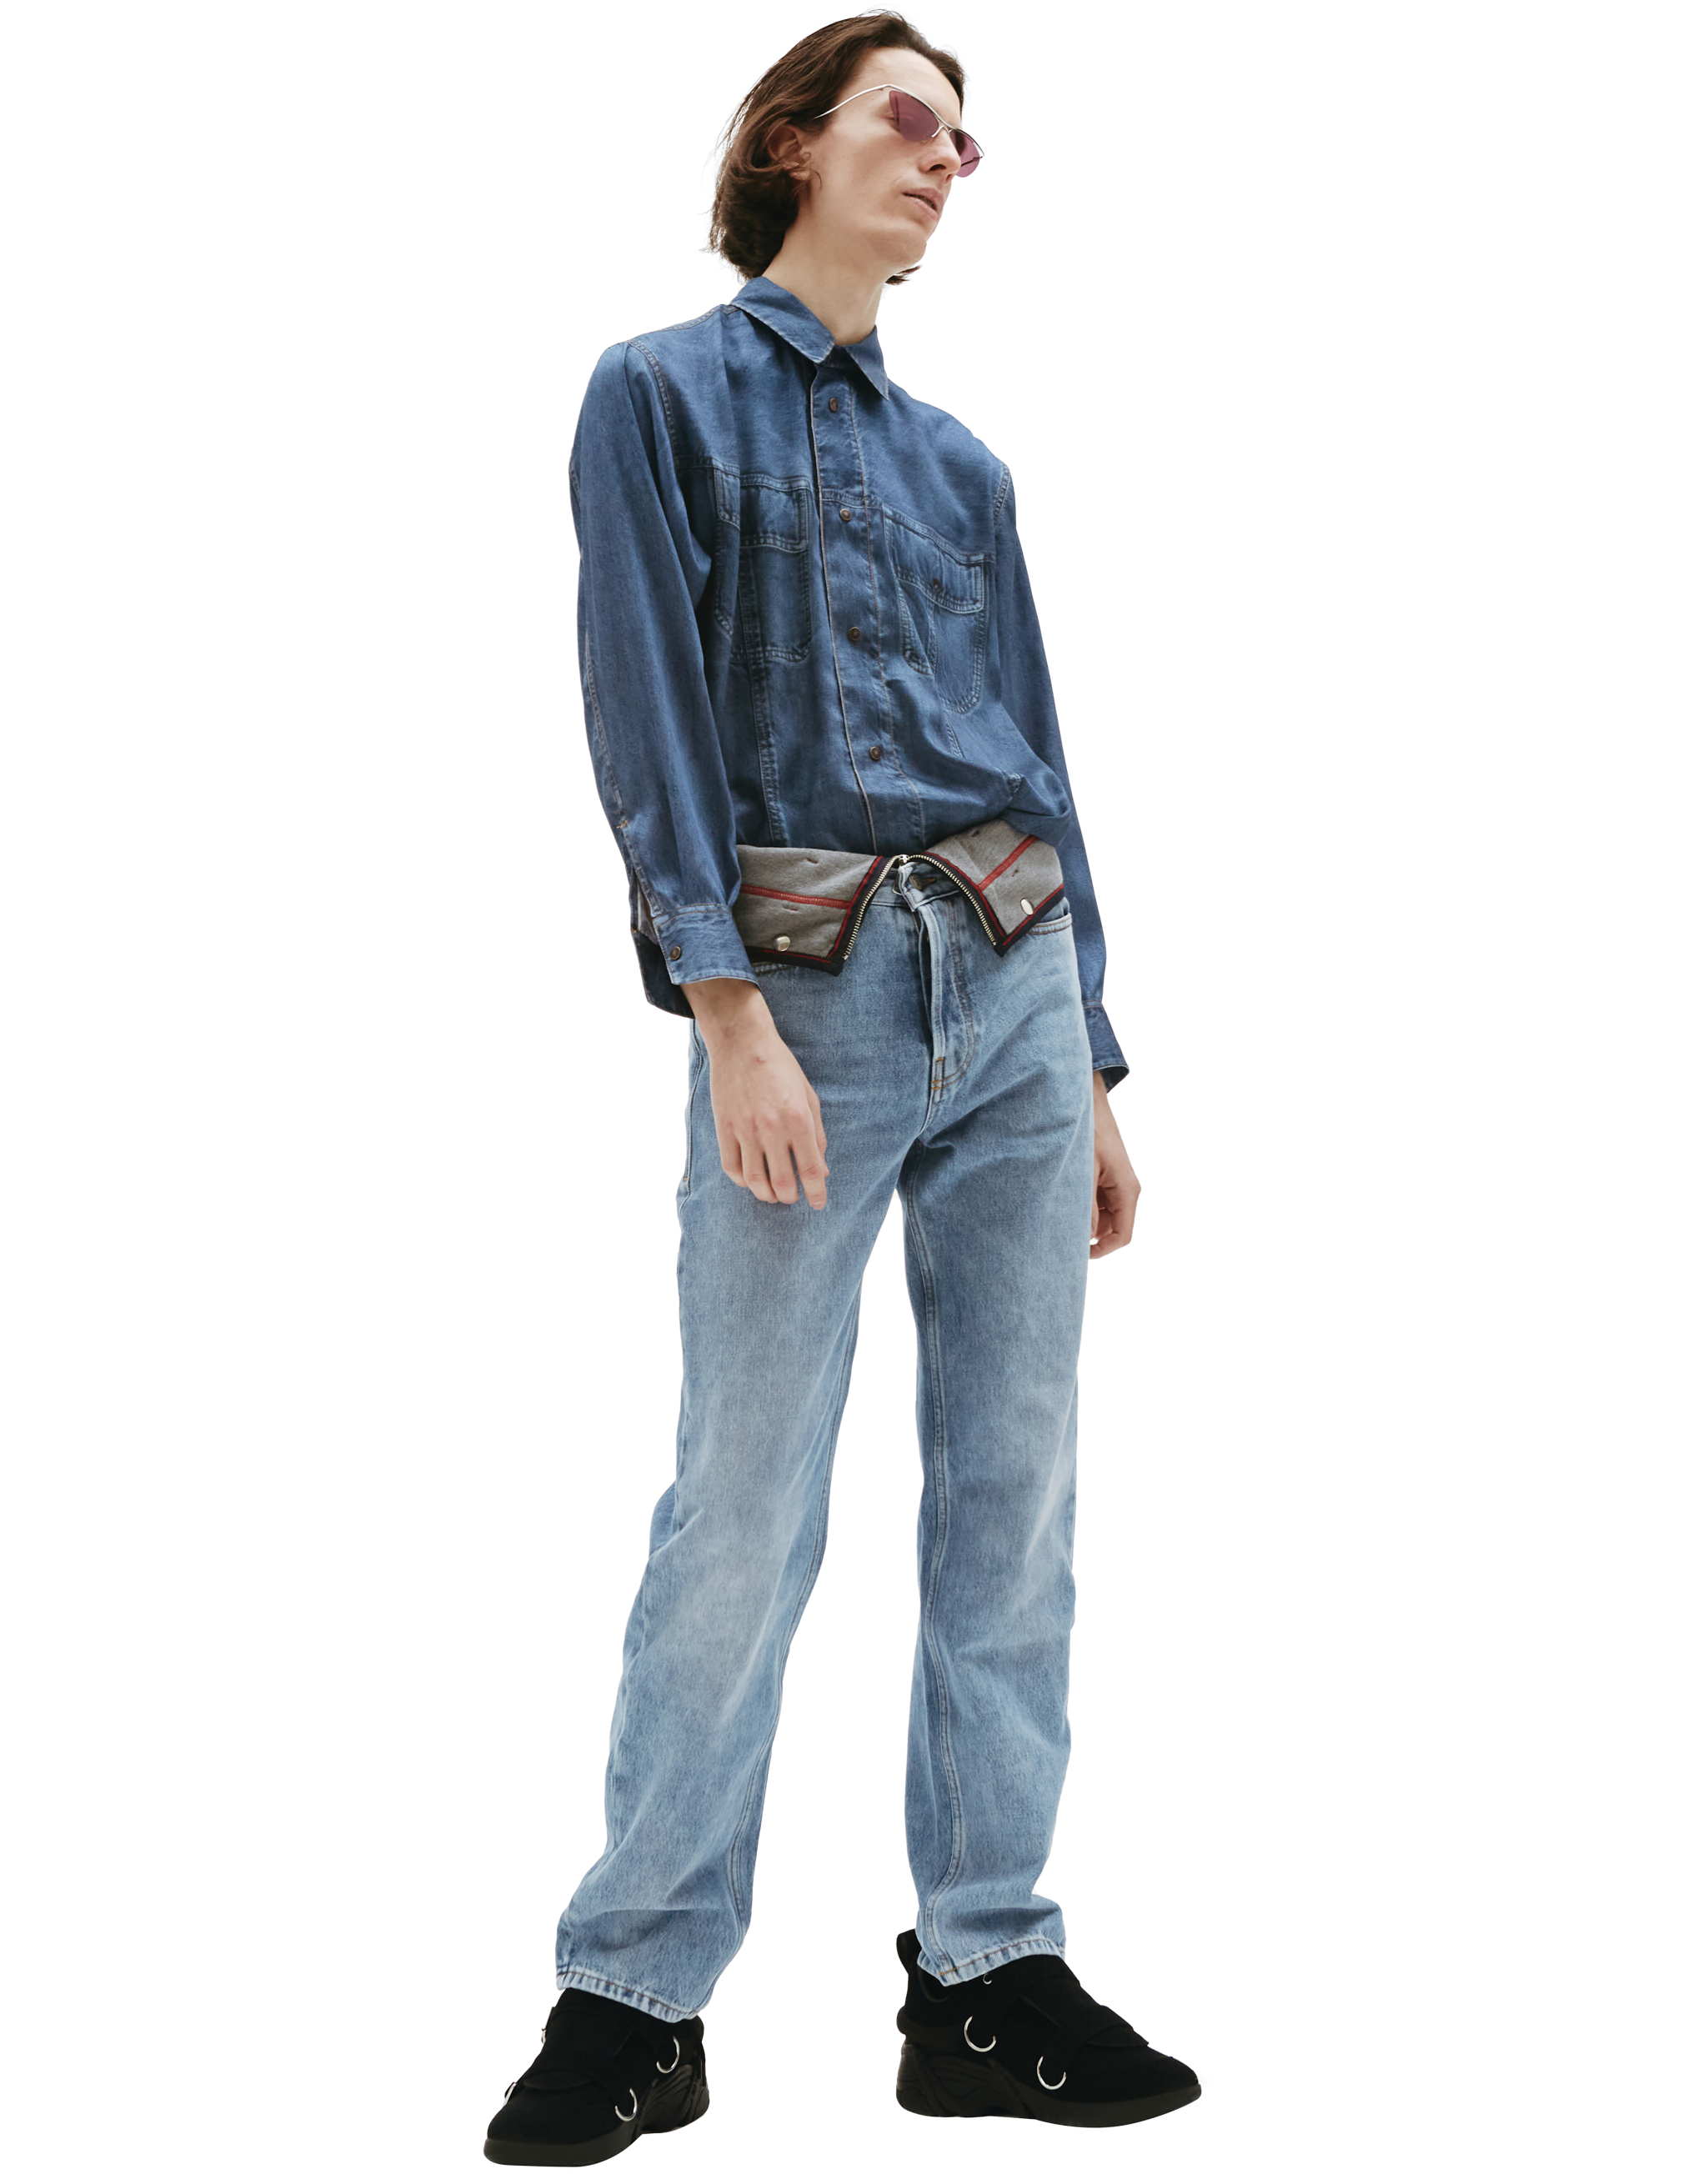 Прямые джинсы с текстильным поясом Diesel A0583809D2801, размер 29;28;27;26;25